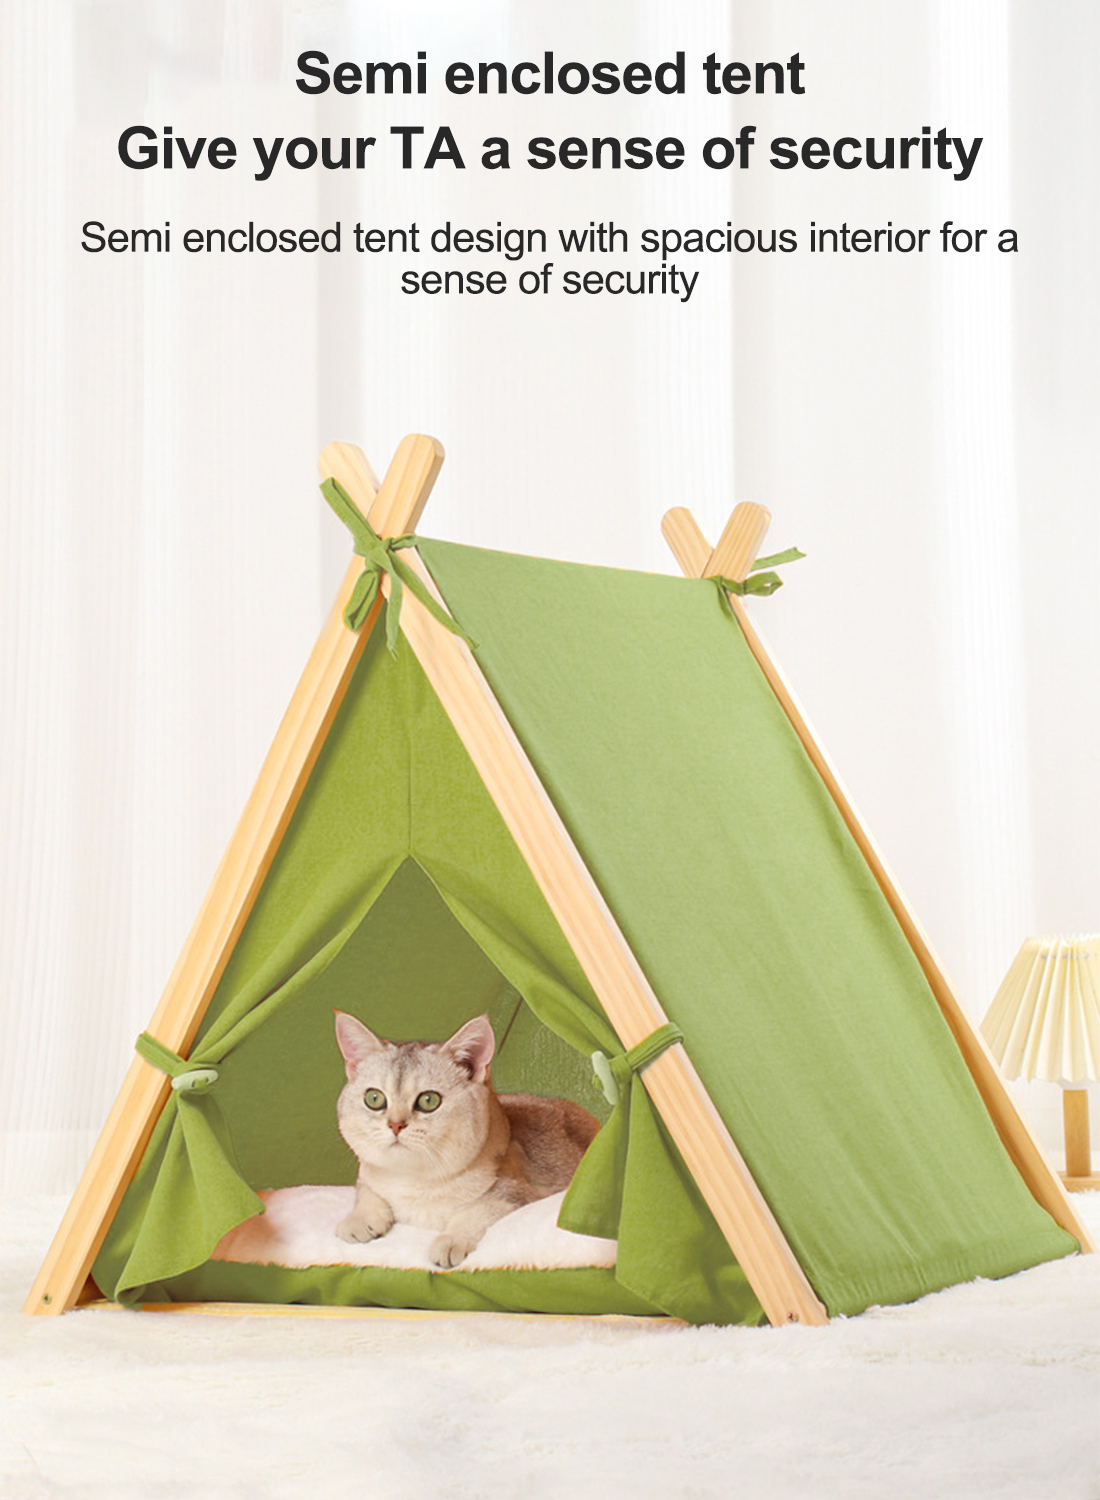 أربعة مواسم عالمية القط والجرو الحيوانات الأليفة خيمة مغلقة الصنوبر الحارة القط خيمة مع وسادة لينة